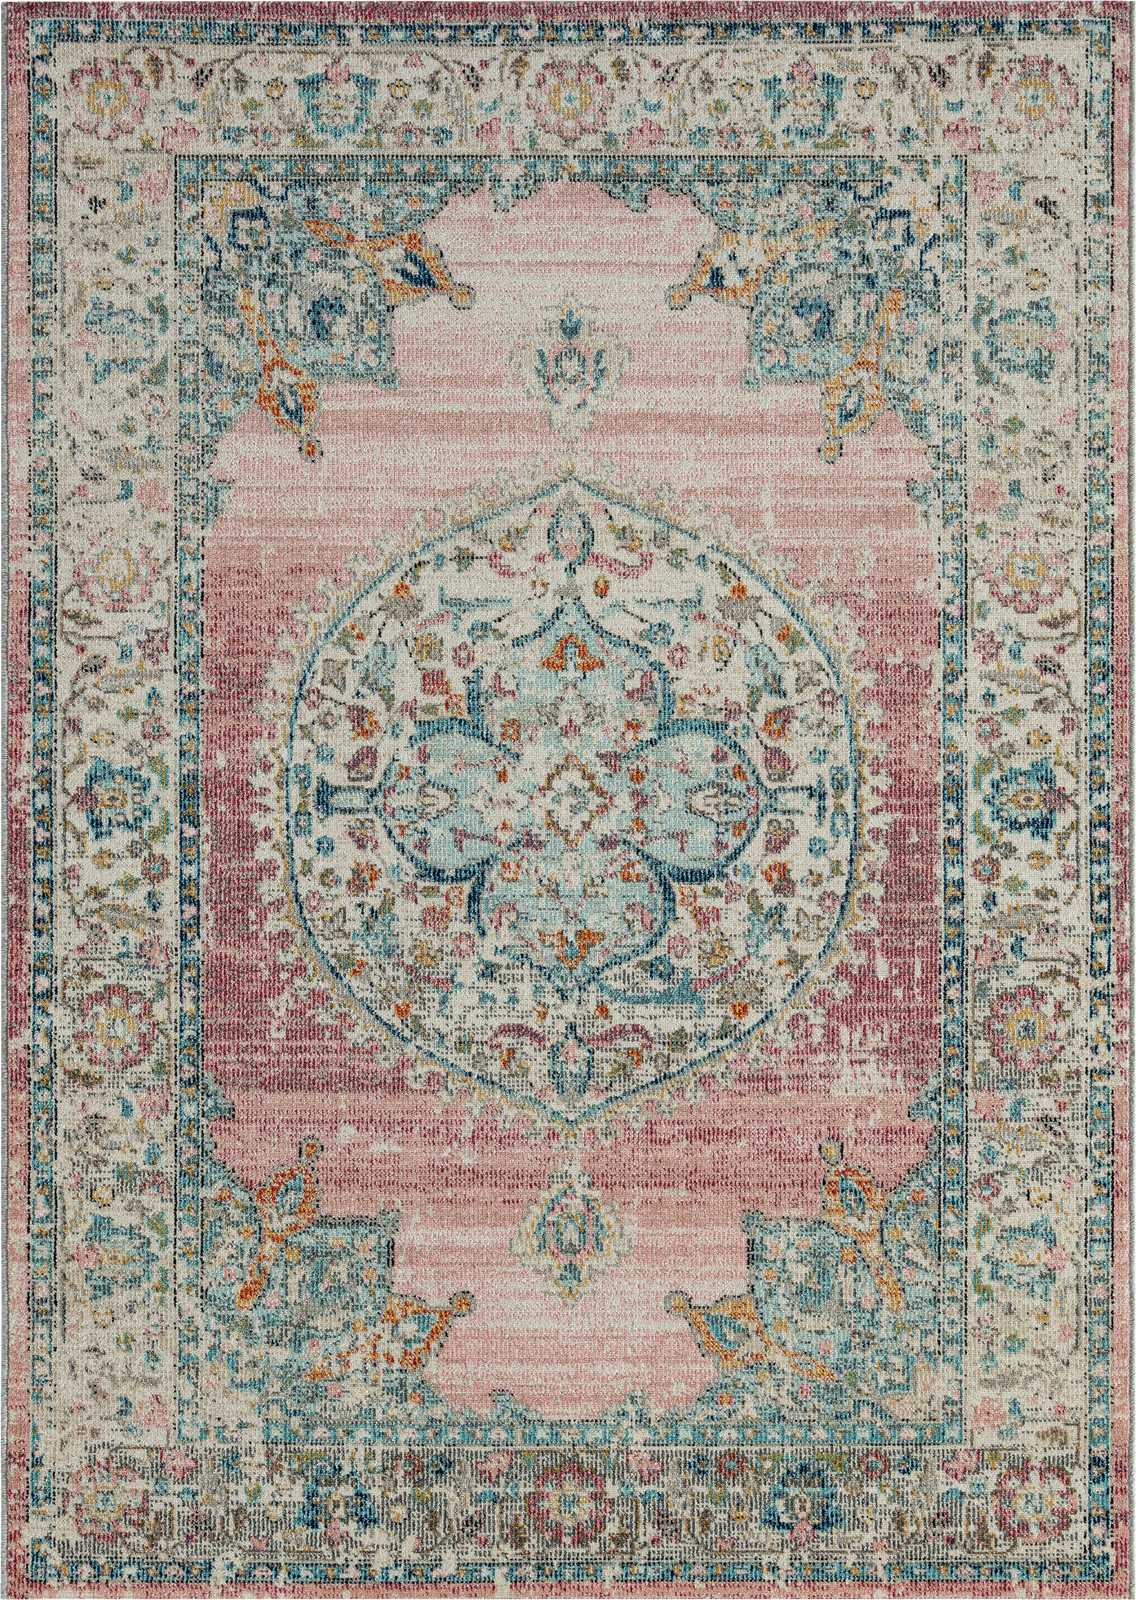             Outdoor Teppich aus Flachgewebe mit Pinken Akzenten – 150 x 80 cm
        